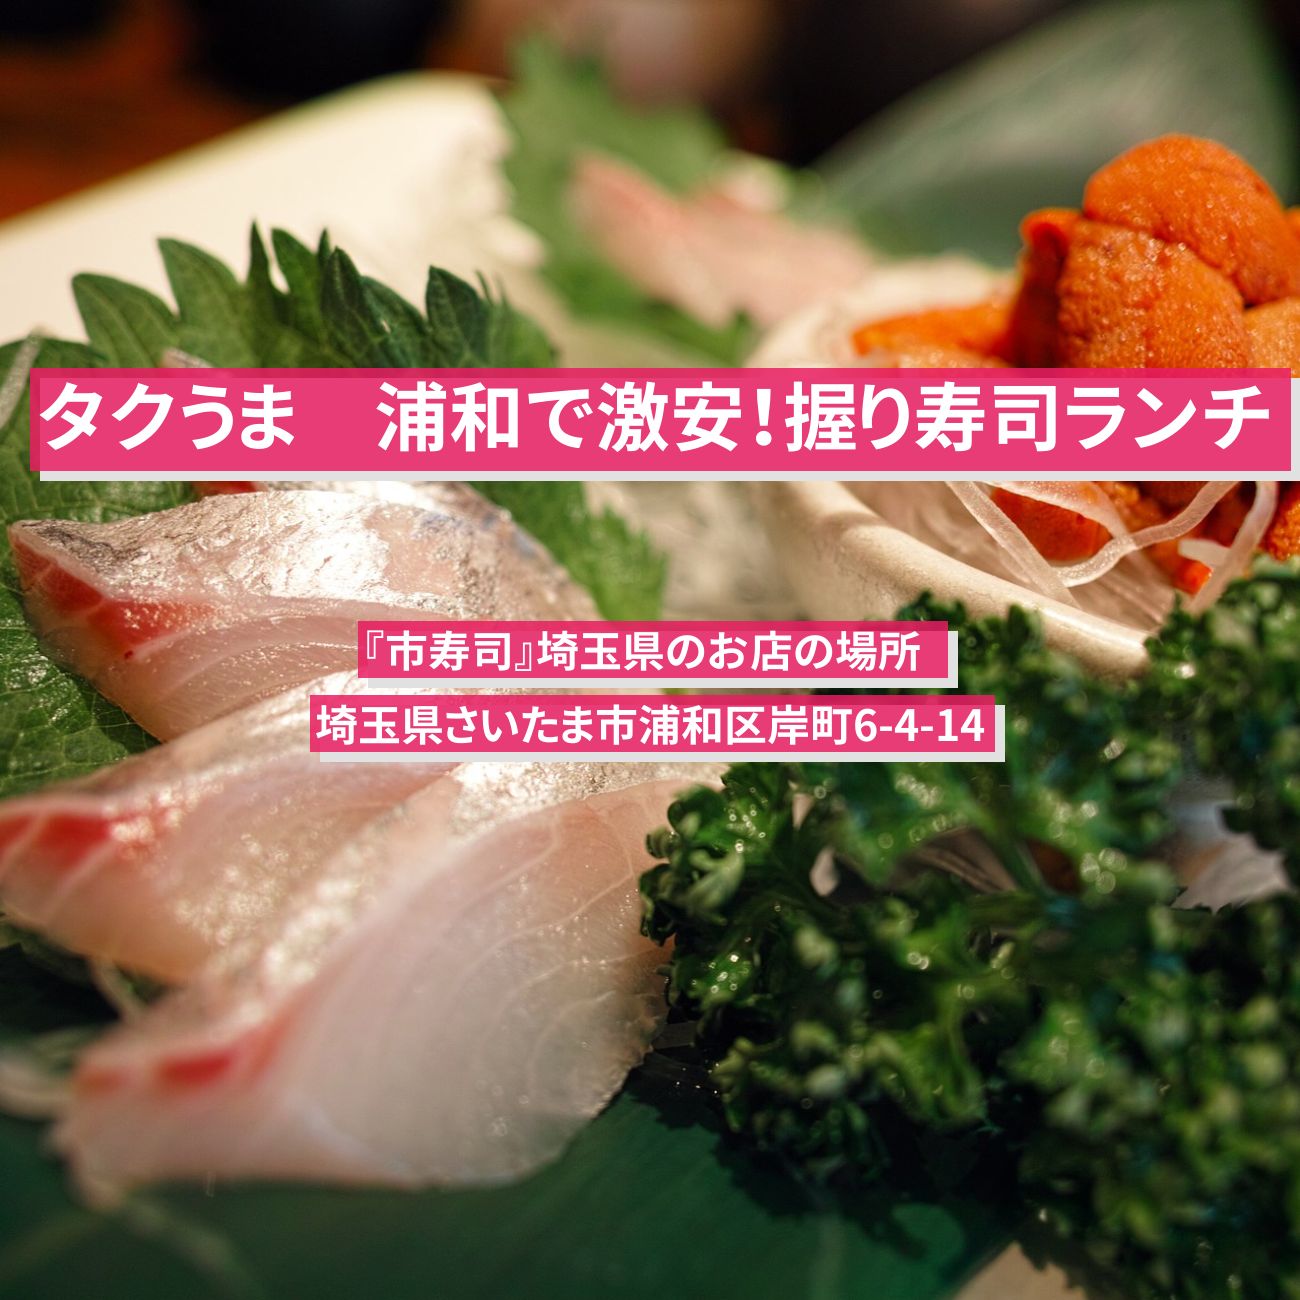 【タクうま】浦和で激安！握り寿司ランチ『市寿司』埼玉県のお店の場所  〔タクシー運転手さん一番うまい店に連れてって〕